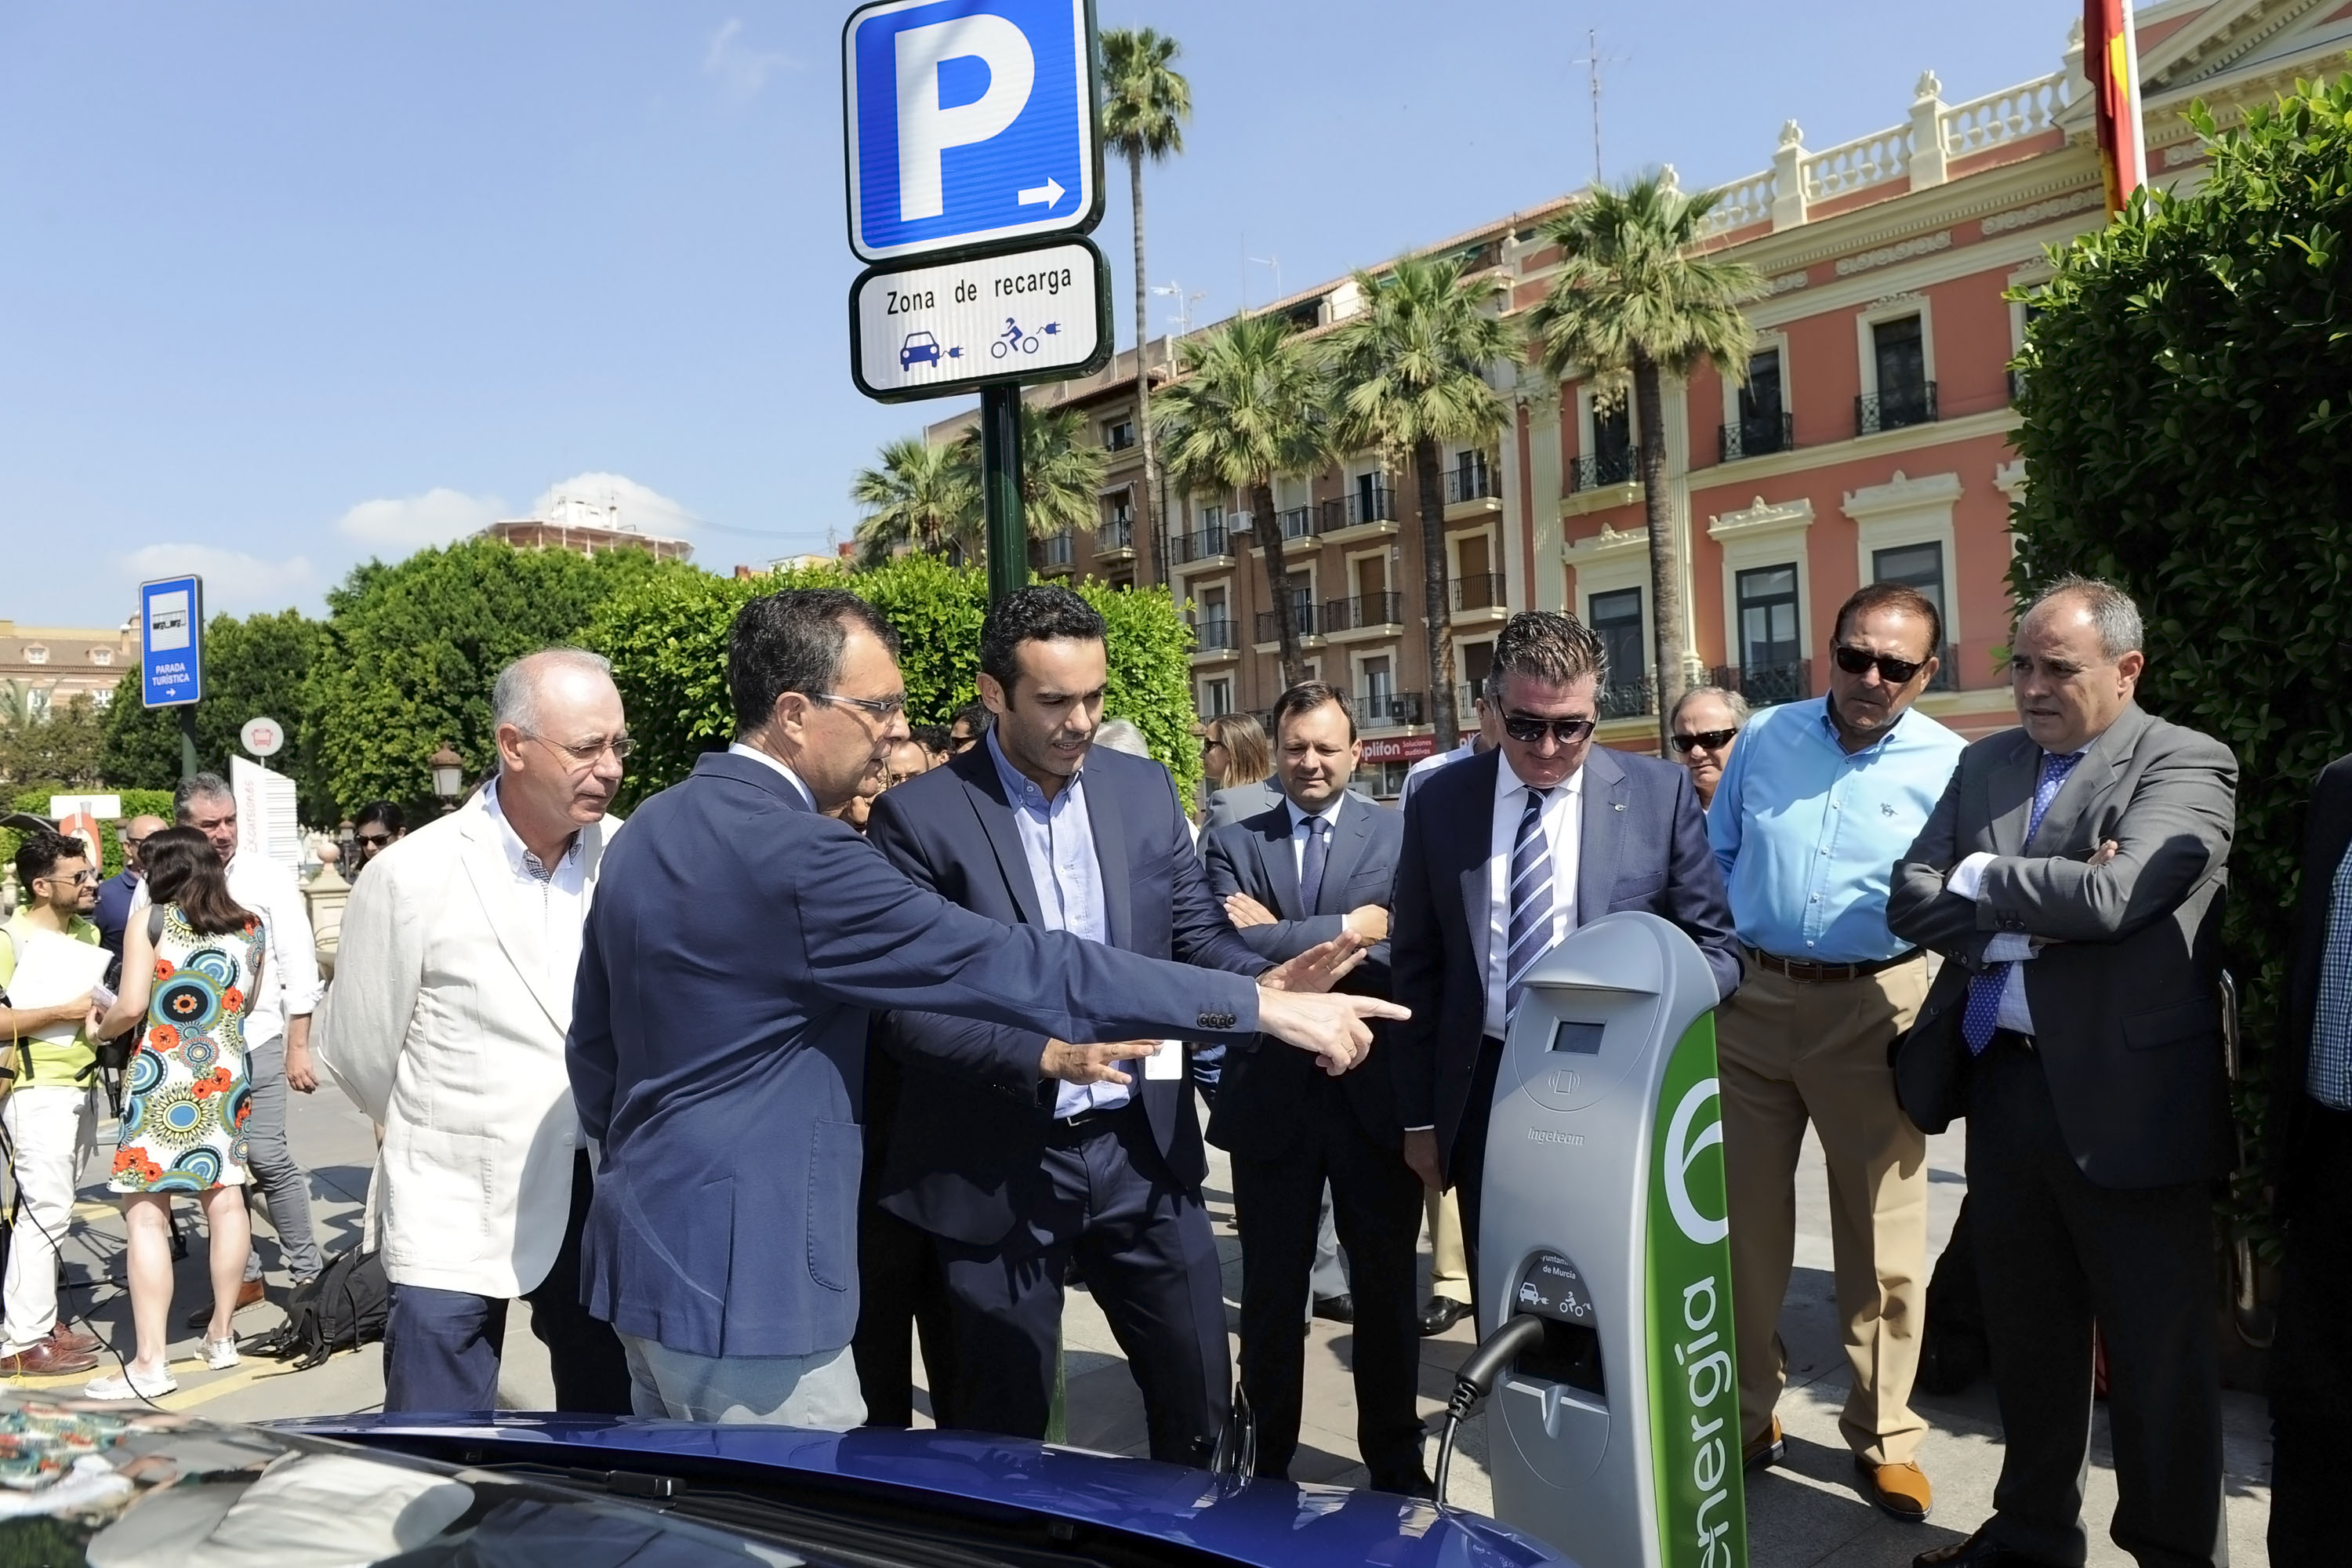 El alcalde, Ballesta, inaugurando esta mañana el nuevo punto de recarga para vehículos eléctricos público y gratuito en la Glorieta de Murcia. Imagen: Ayto. de Murcia